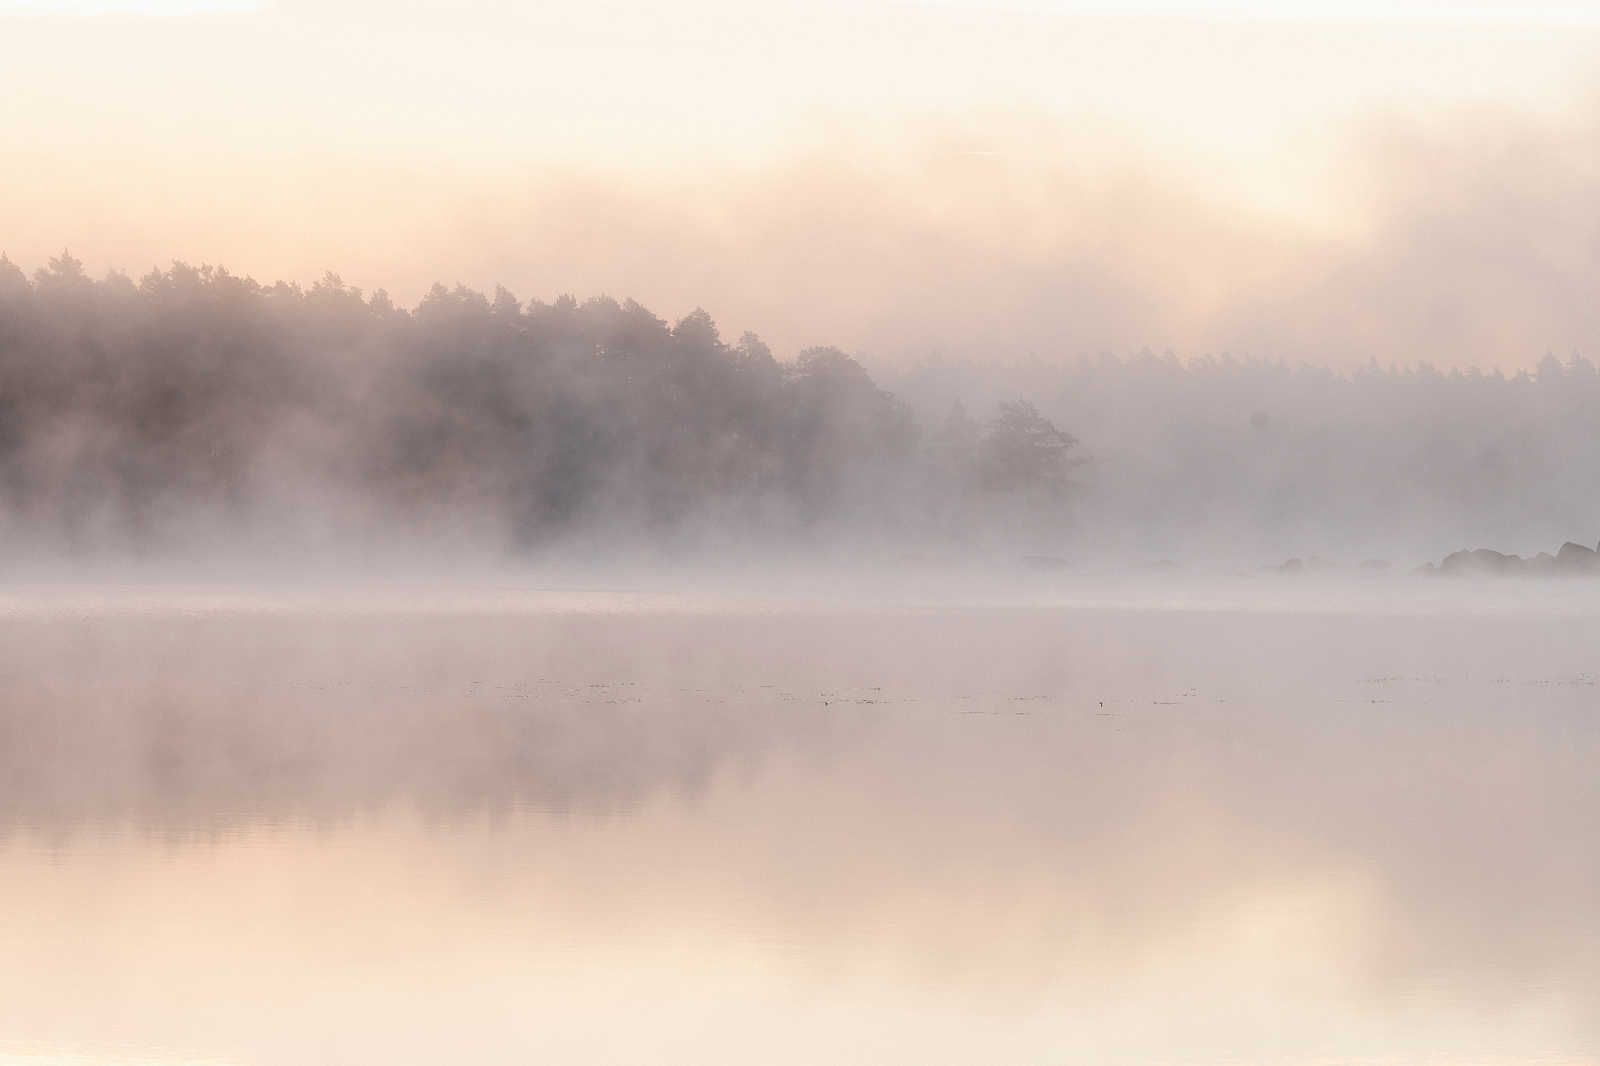             Avalon 2 - Tableau toile Lac le matin avec brume matinale - 1,20 m x 0,80 m
        